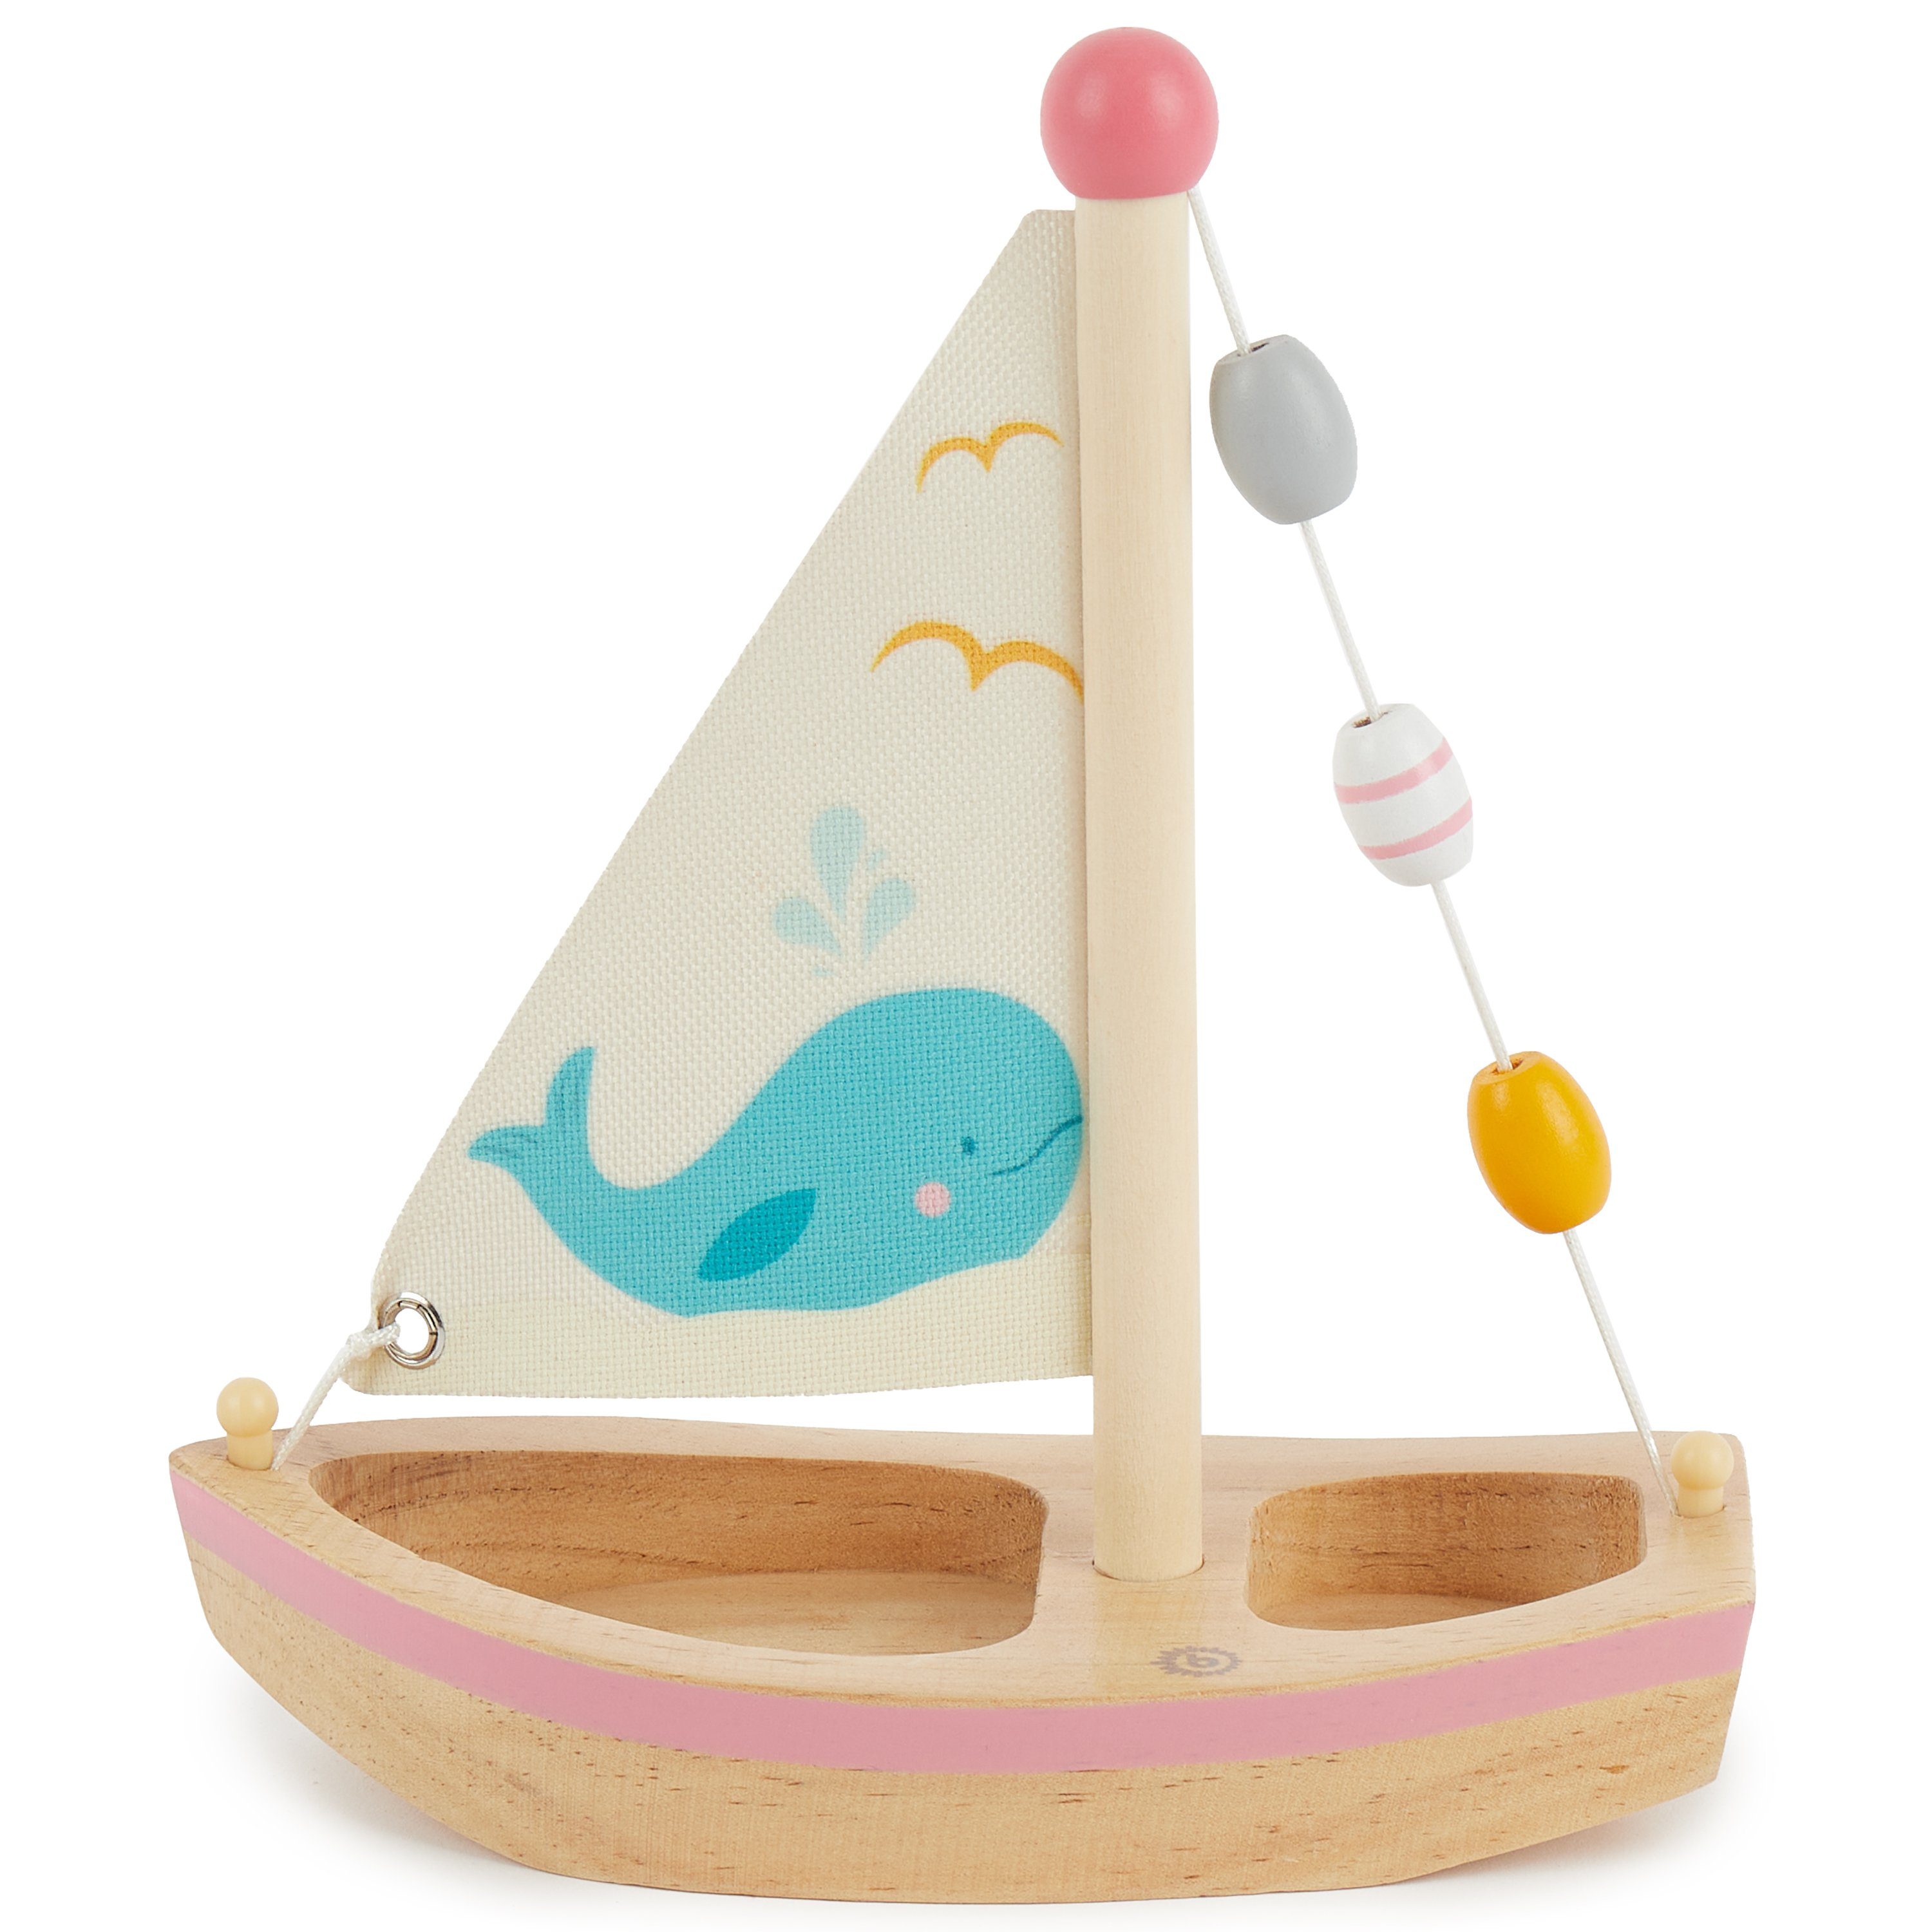 Boot Schwimmfähig Spielzeug Deko Strand Wasser für Kinder Schiff Badespielzeug mit Spielzeug Holzboot Segelboot Segelboot Spielzeug Spielsachen Holz cm Bieco Wasser 20x18 Spielzeug Segel Spielzeug BIECO